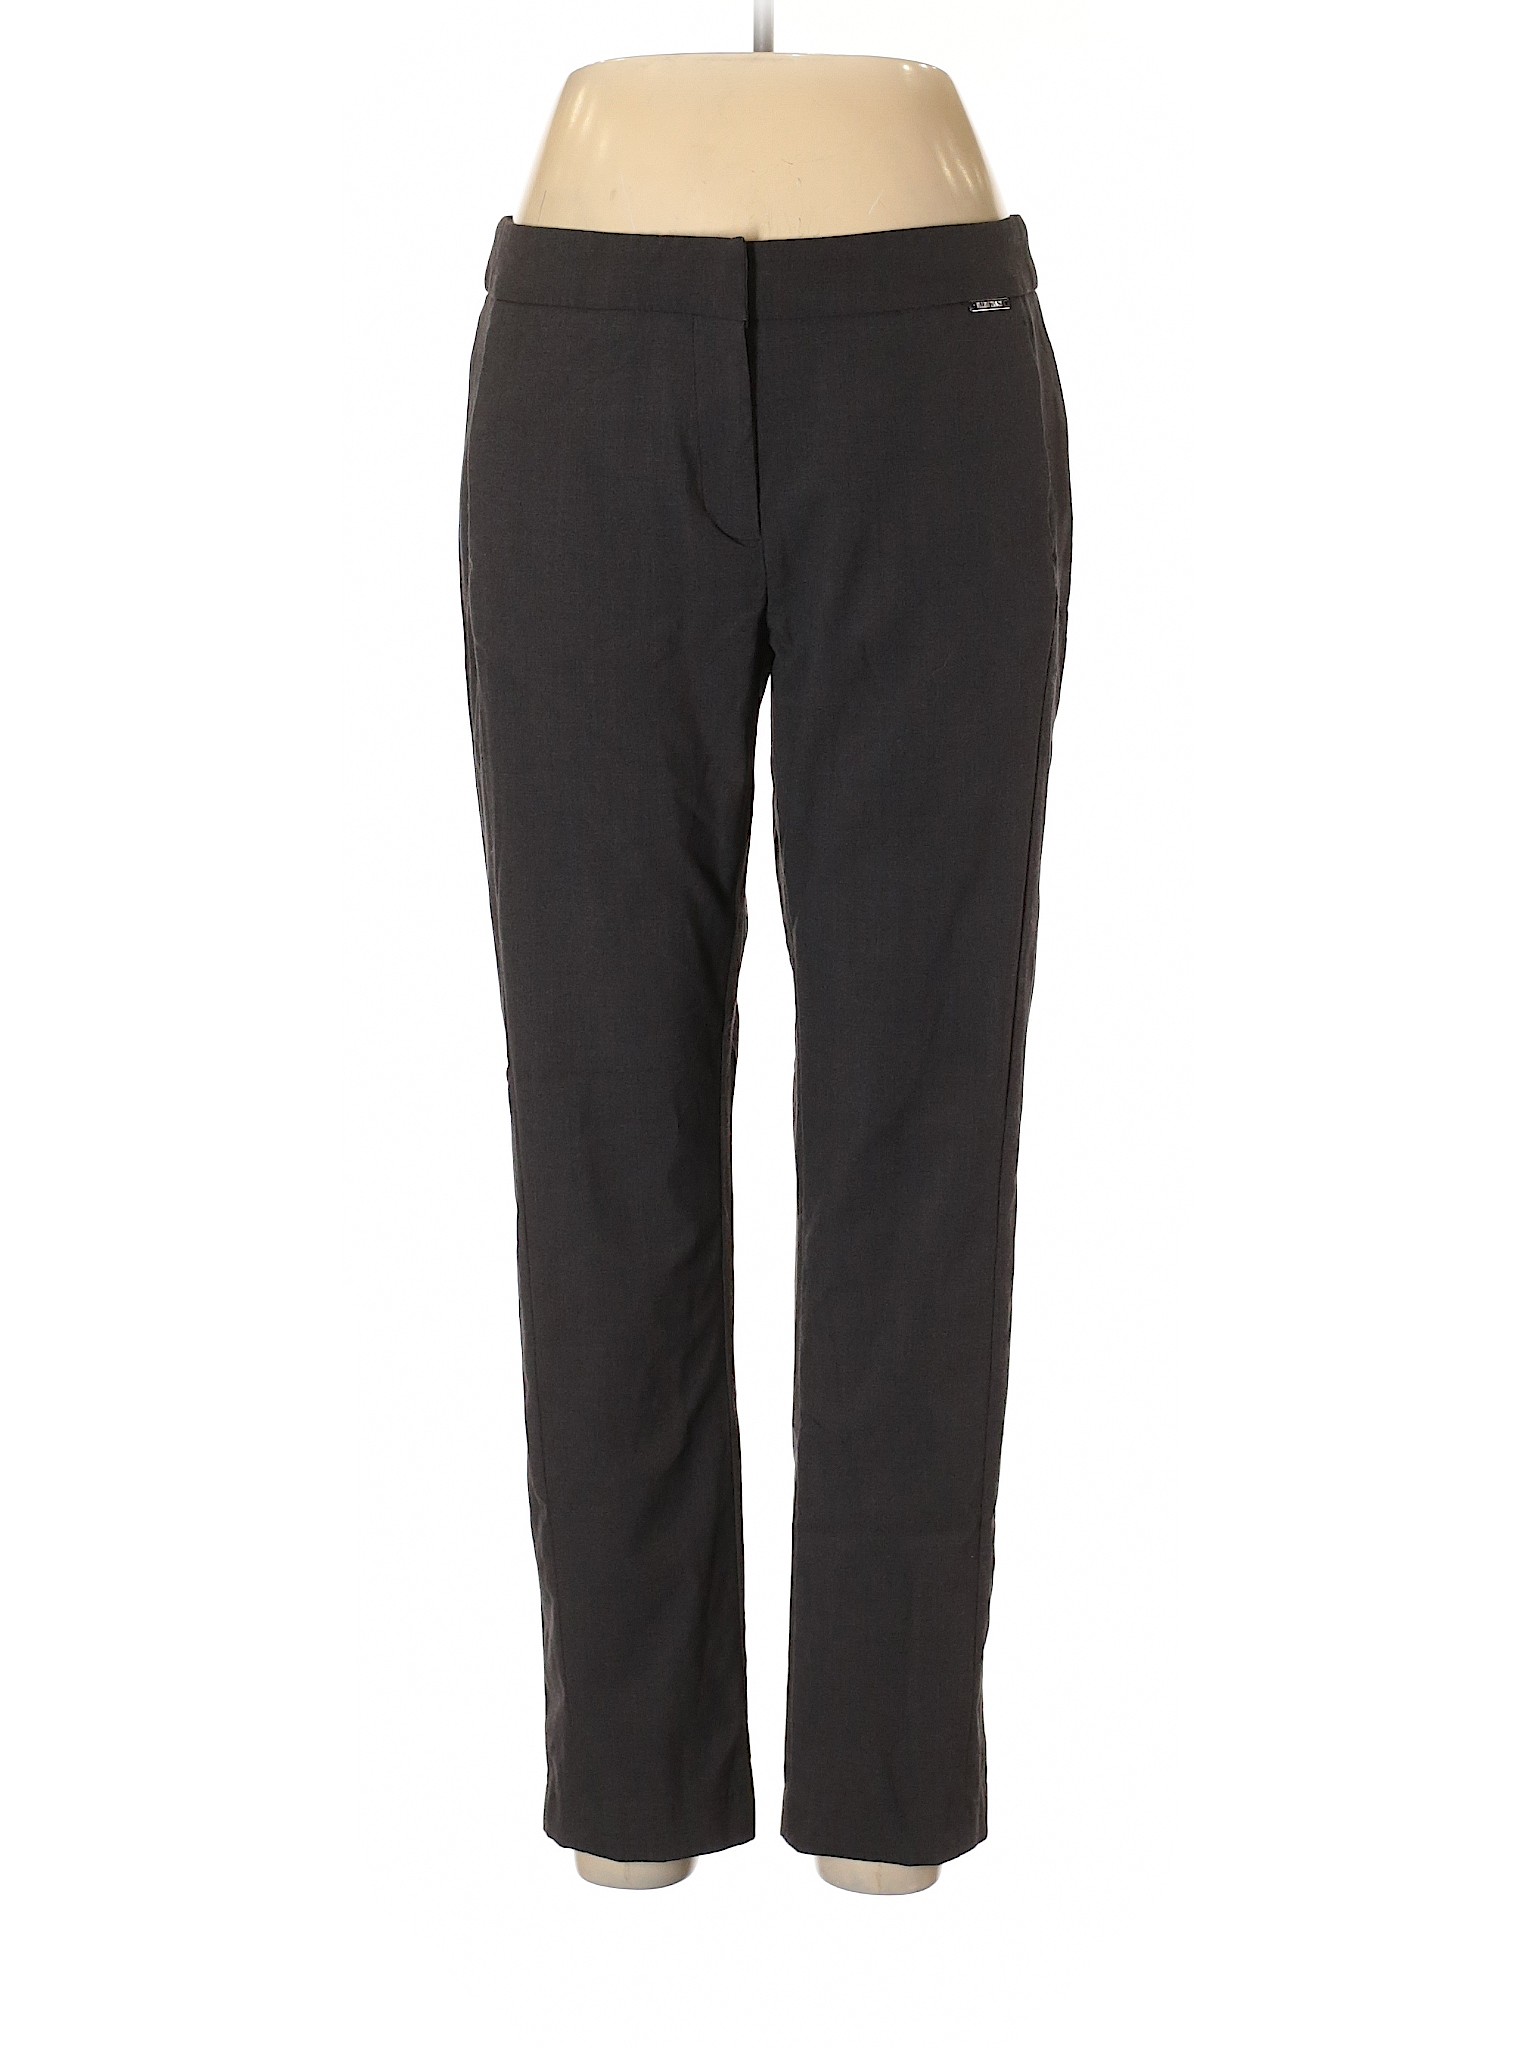 Ellen Tracy Women Black Dress Pants 10 | eBay